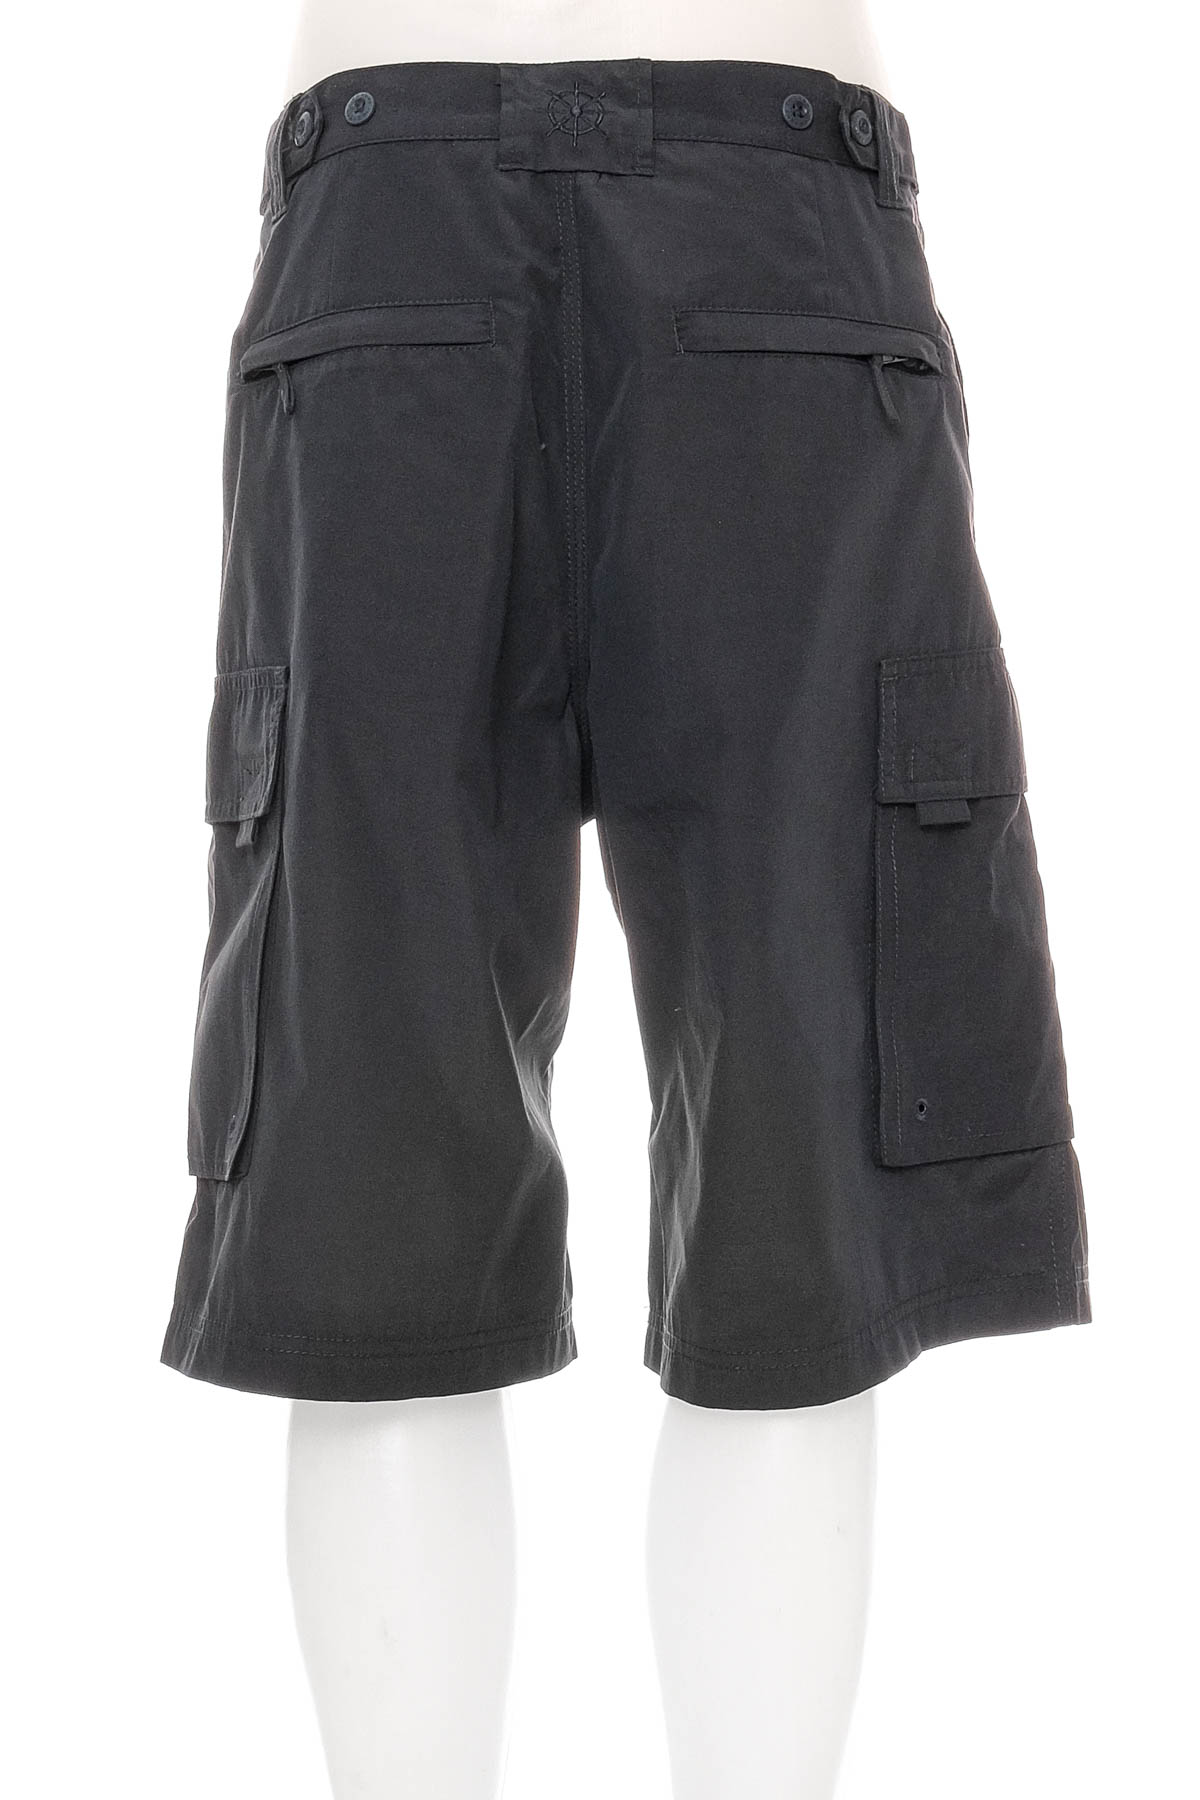 Pantaloni scurți bărbați - DECKERS - 1